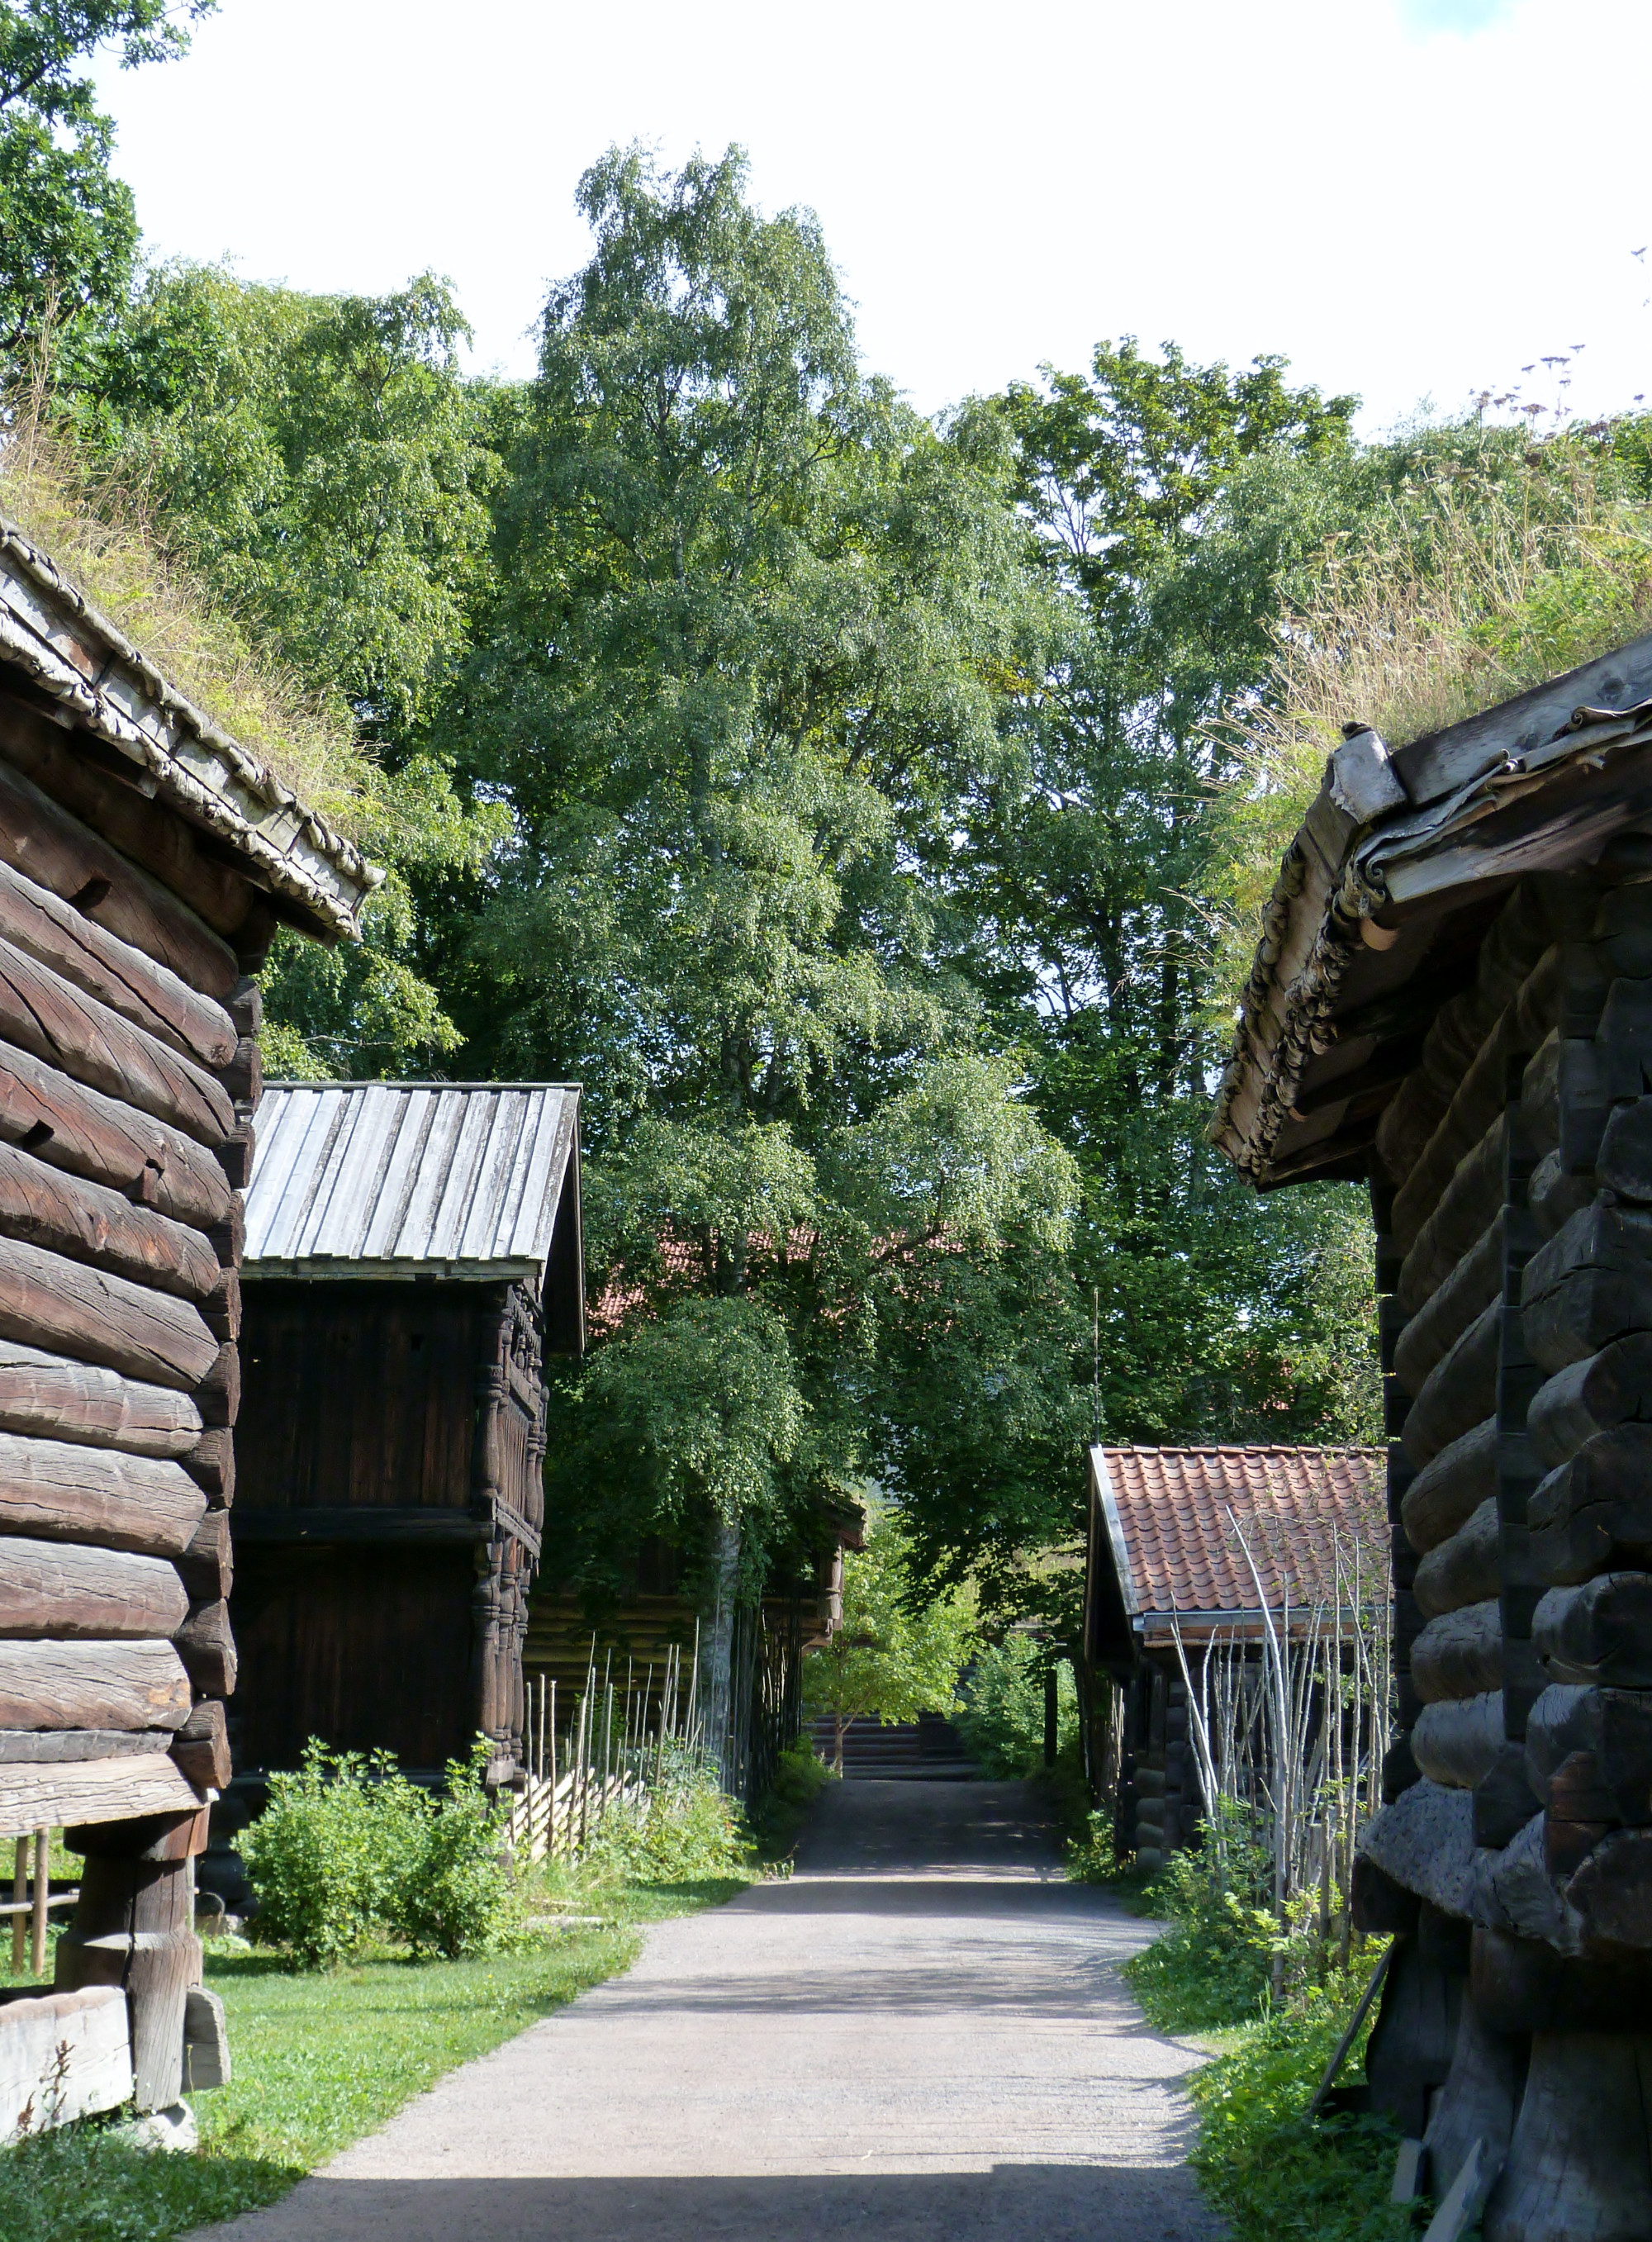 The Tenant Farm from Trøndelag